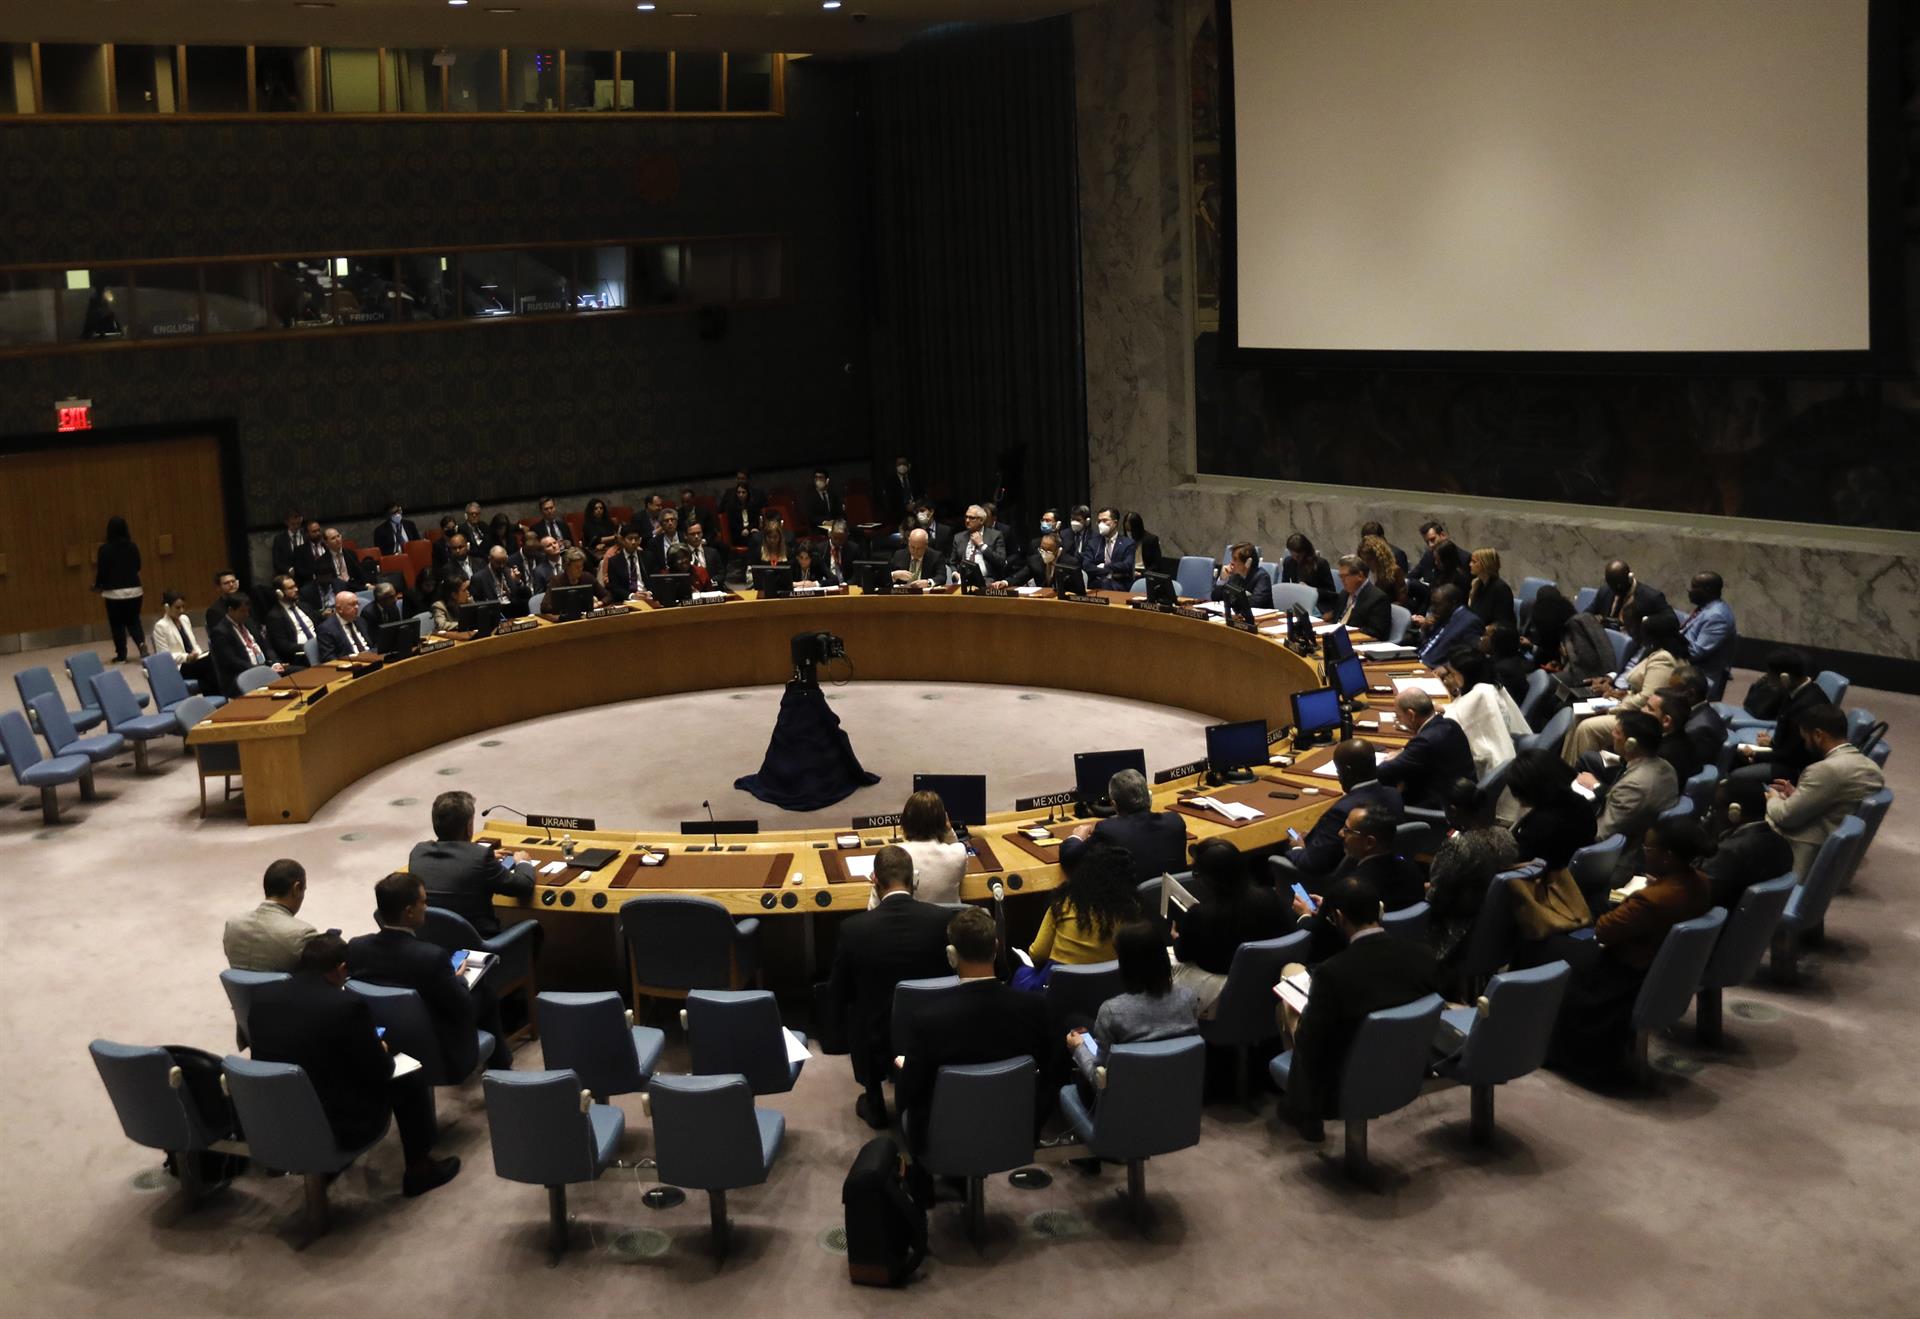 Vista de una reunión del Consejo de Seguridad de la ONU, en una fotografía de archivo. EFE/Peter Foley